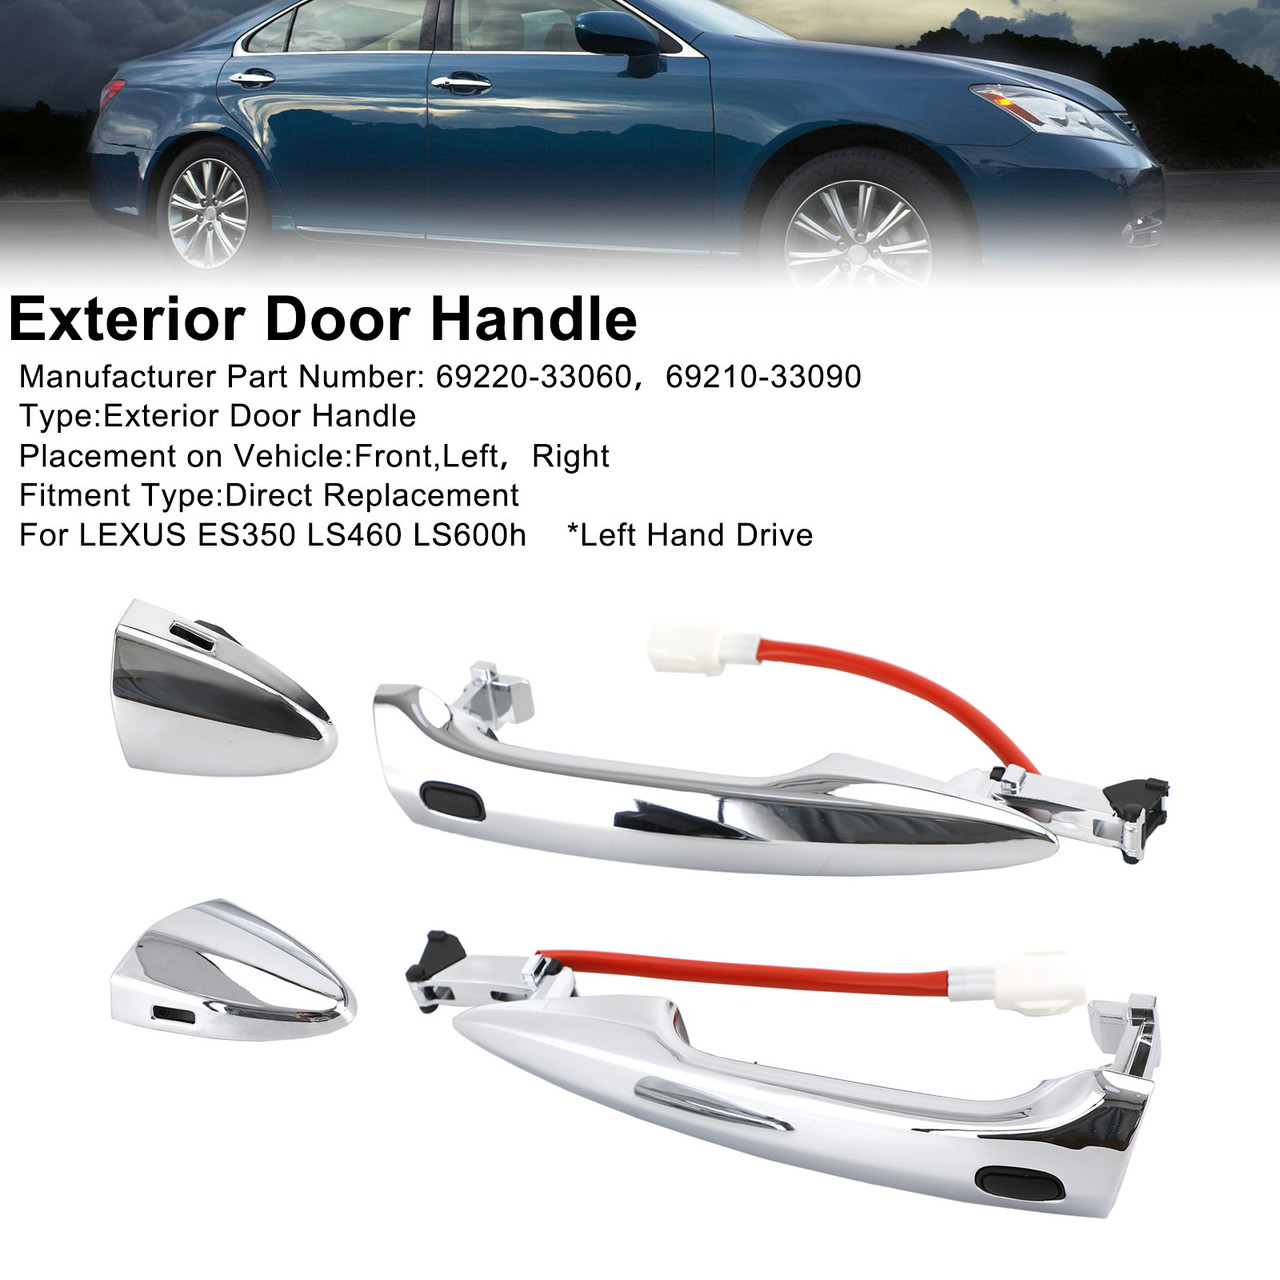 2x Front Exterior Door Handle 69210-33090/60 For LEXUS ES350 LS460 LS600h